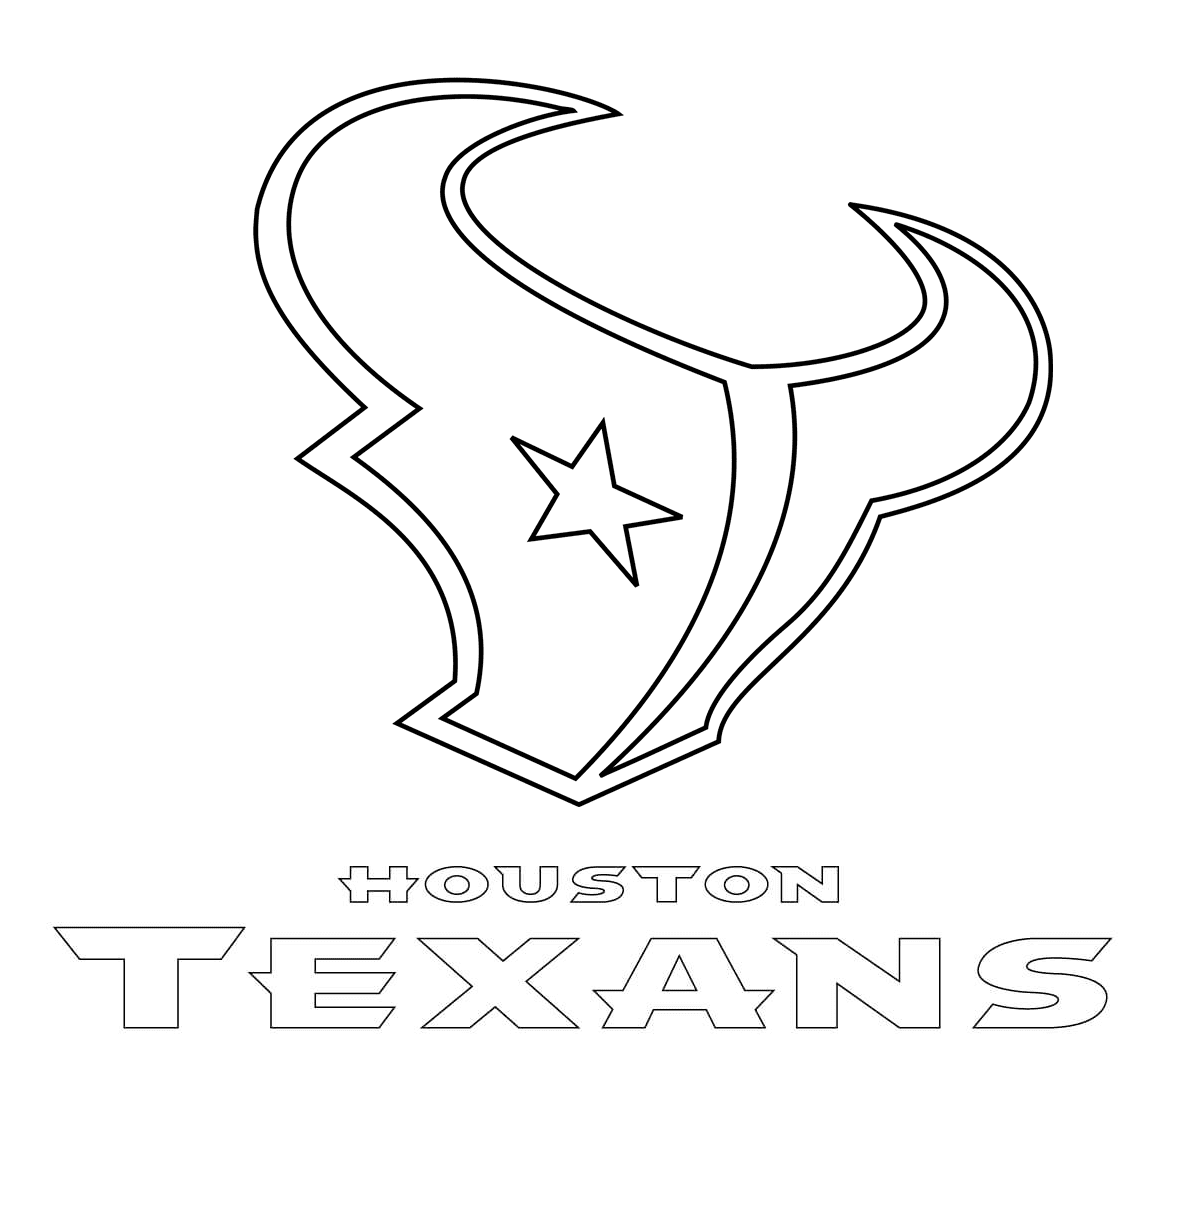 Logotipo do Houston Texans da NFL